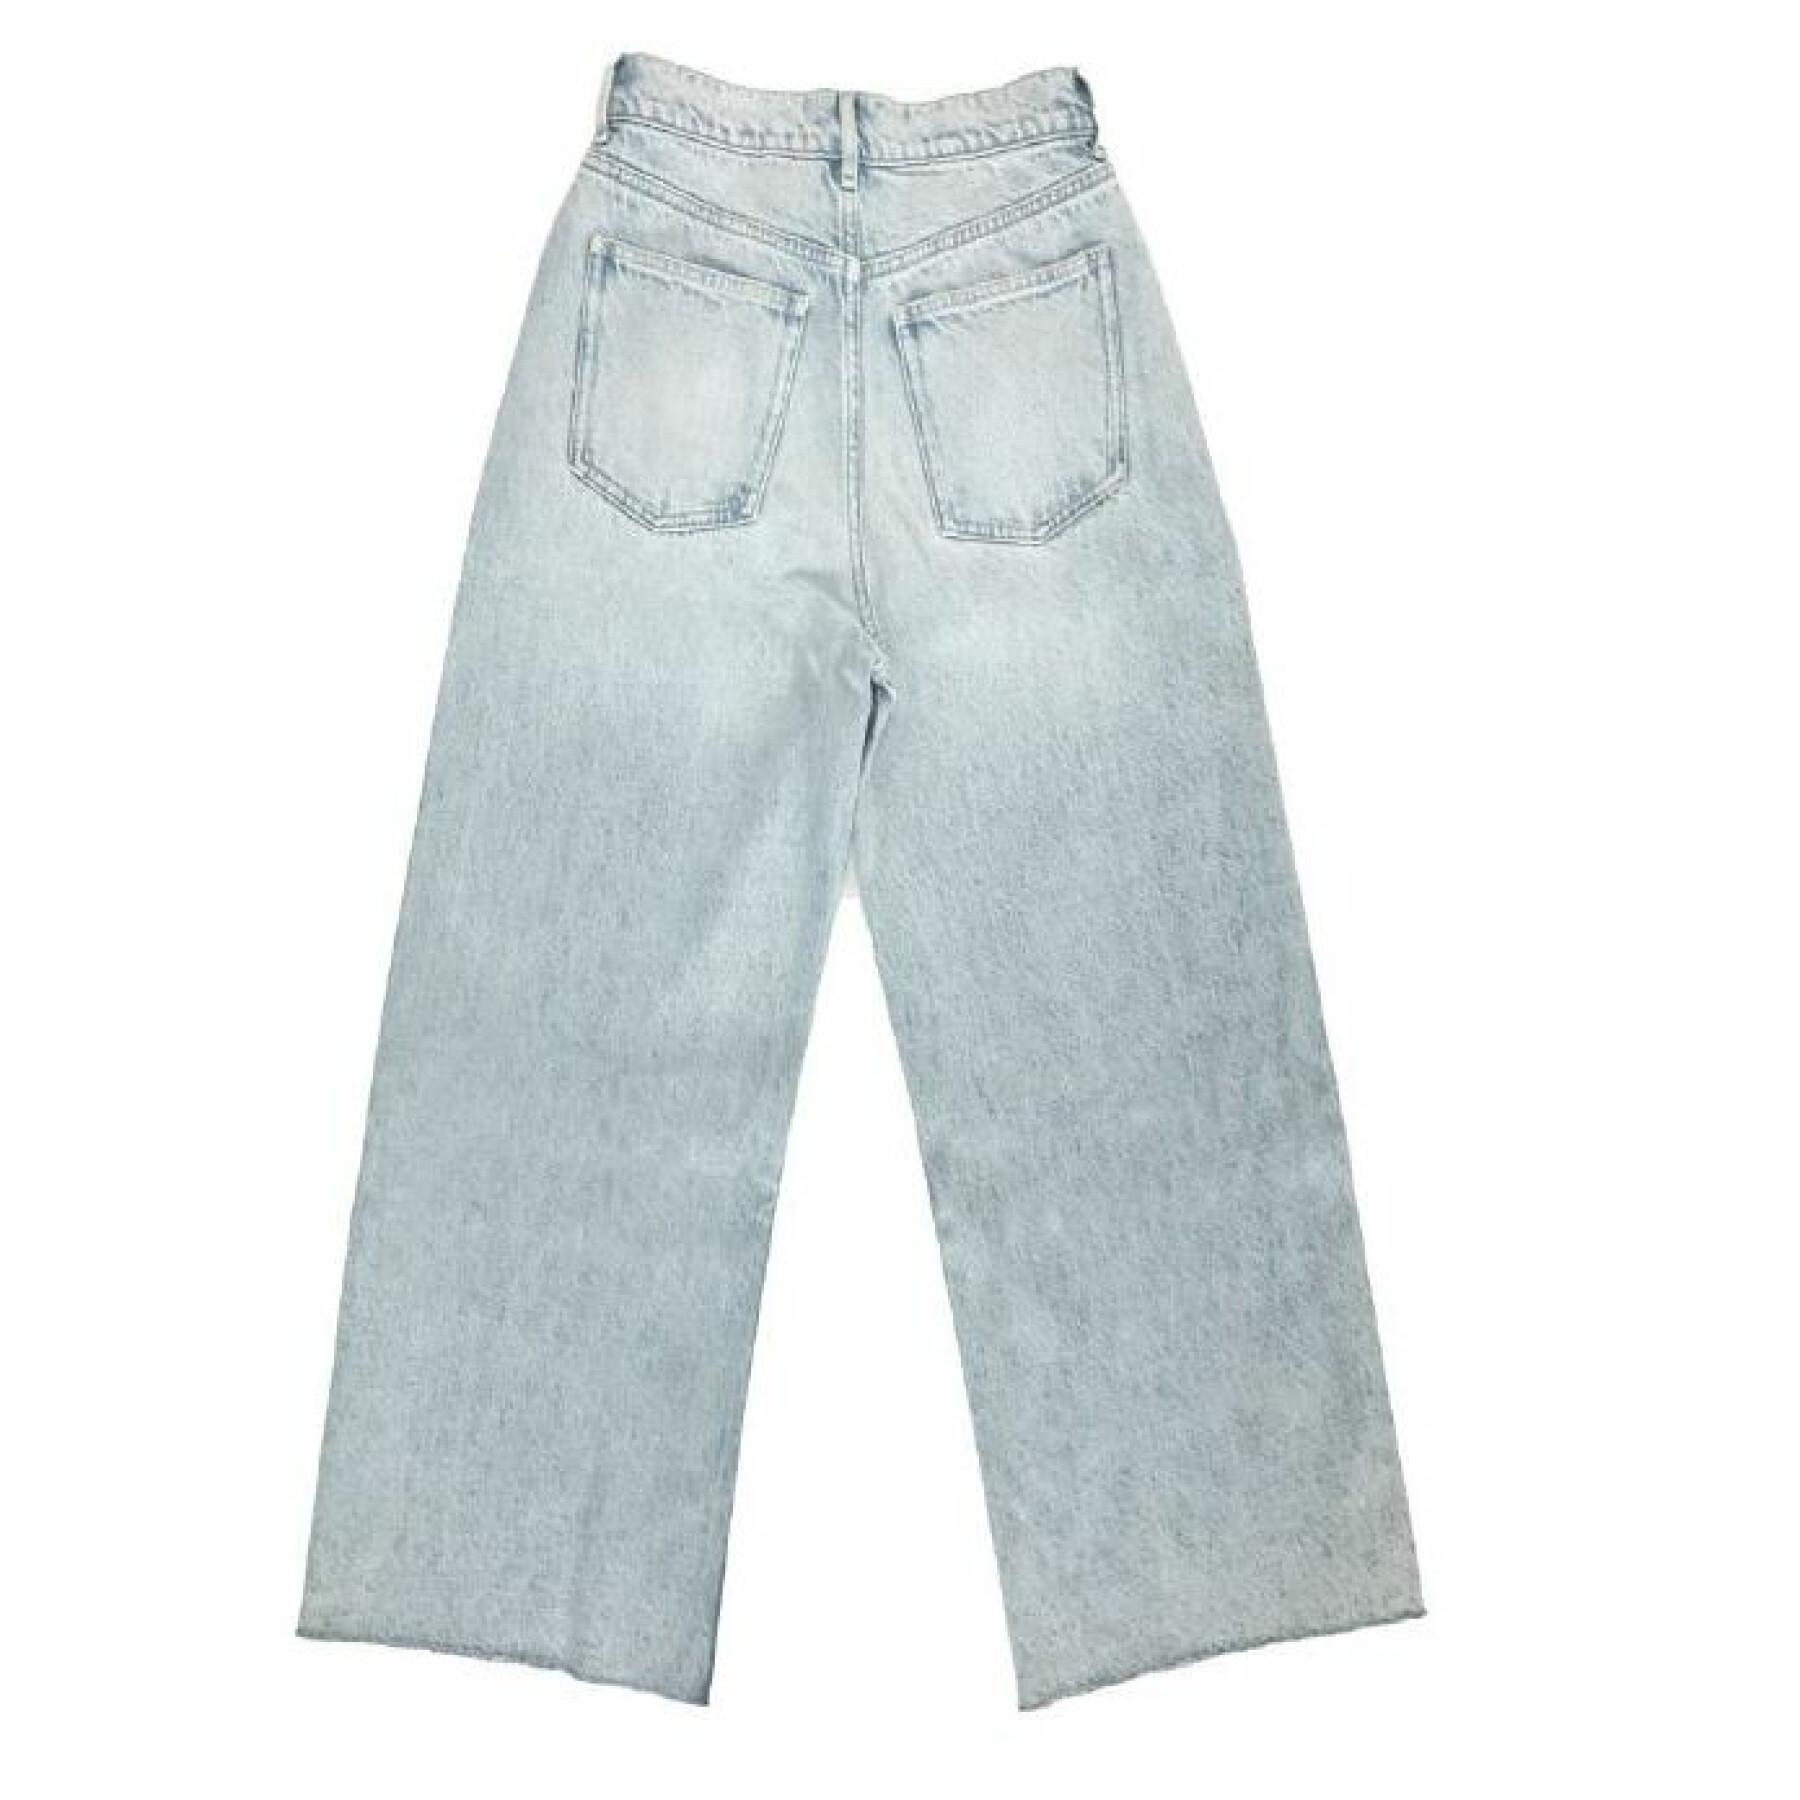 Damskie dżinsy z szerokimi nogawkami destroy jeans Teddy Smith World